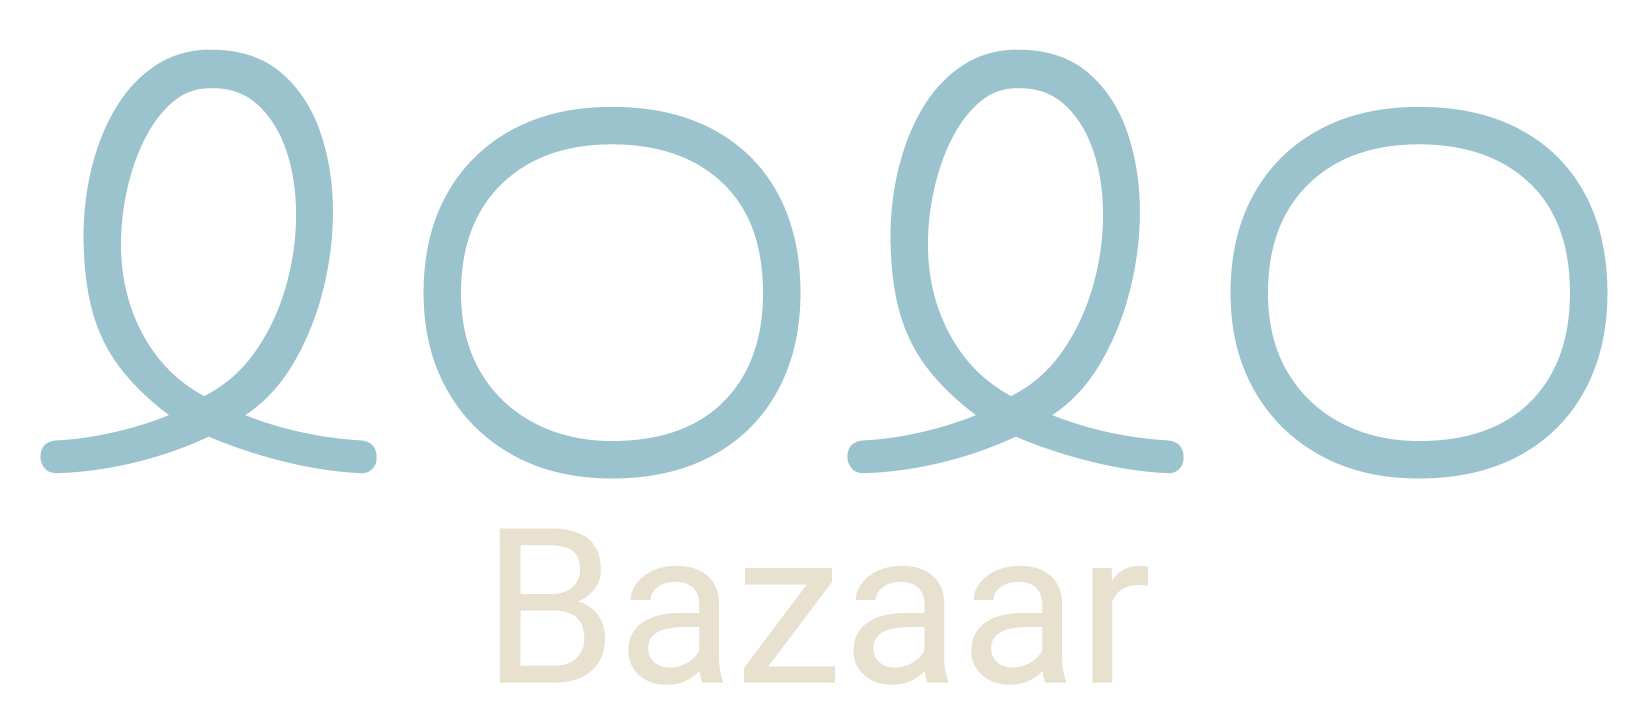 LOLO Bazaar